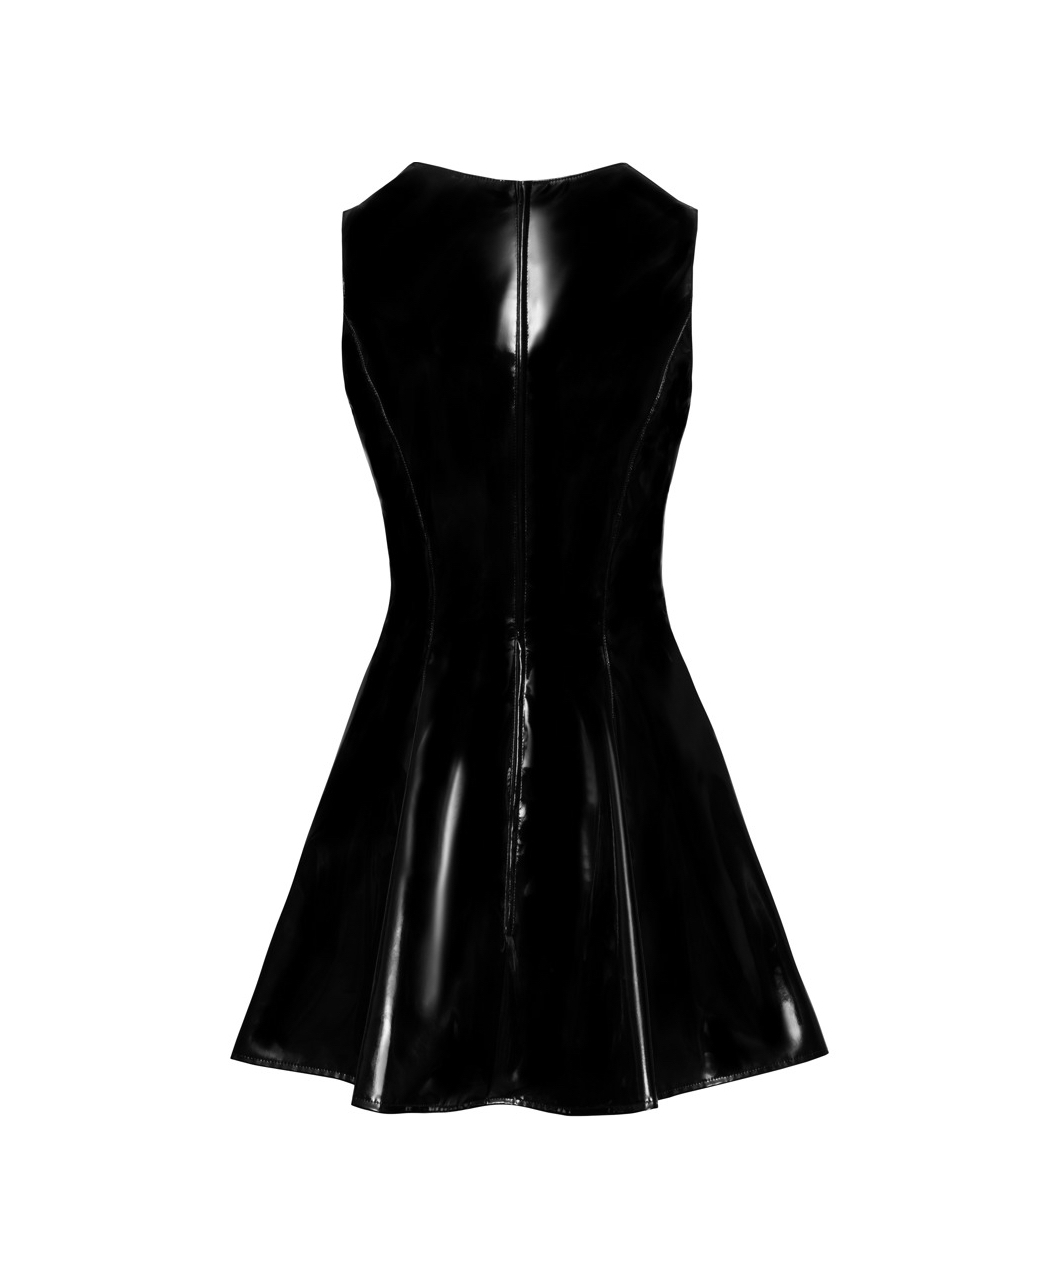 Black Level black vinyl mini dress with lace